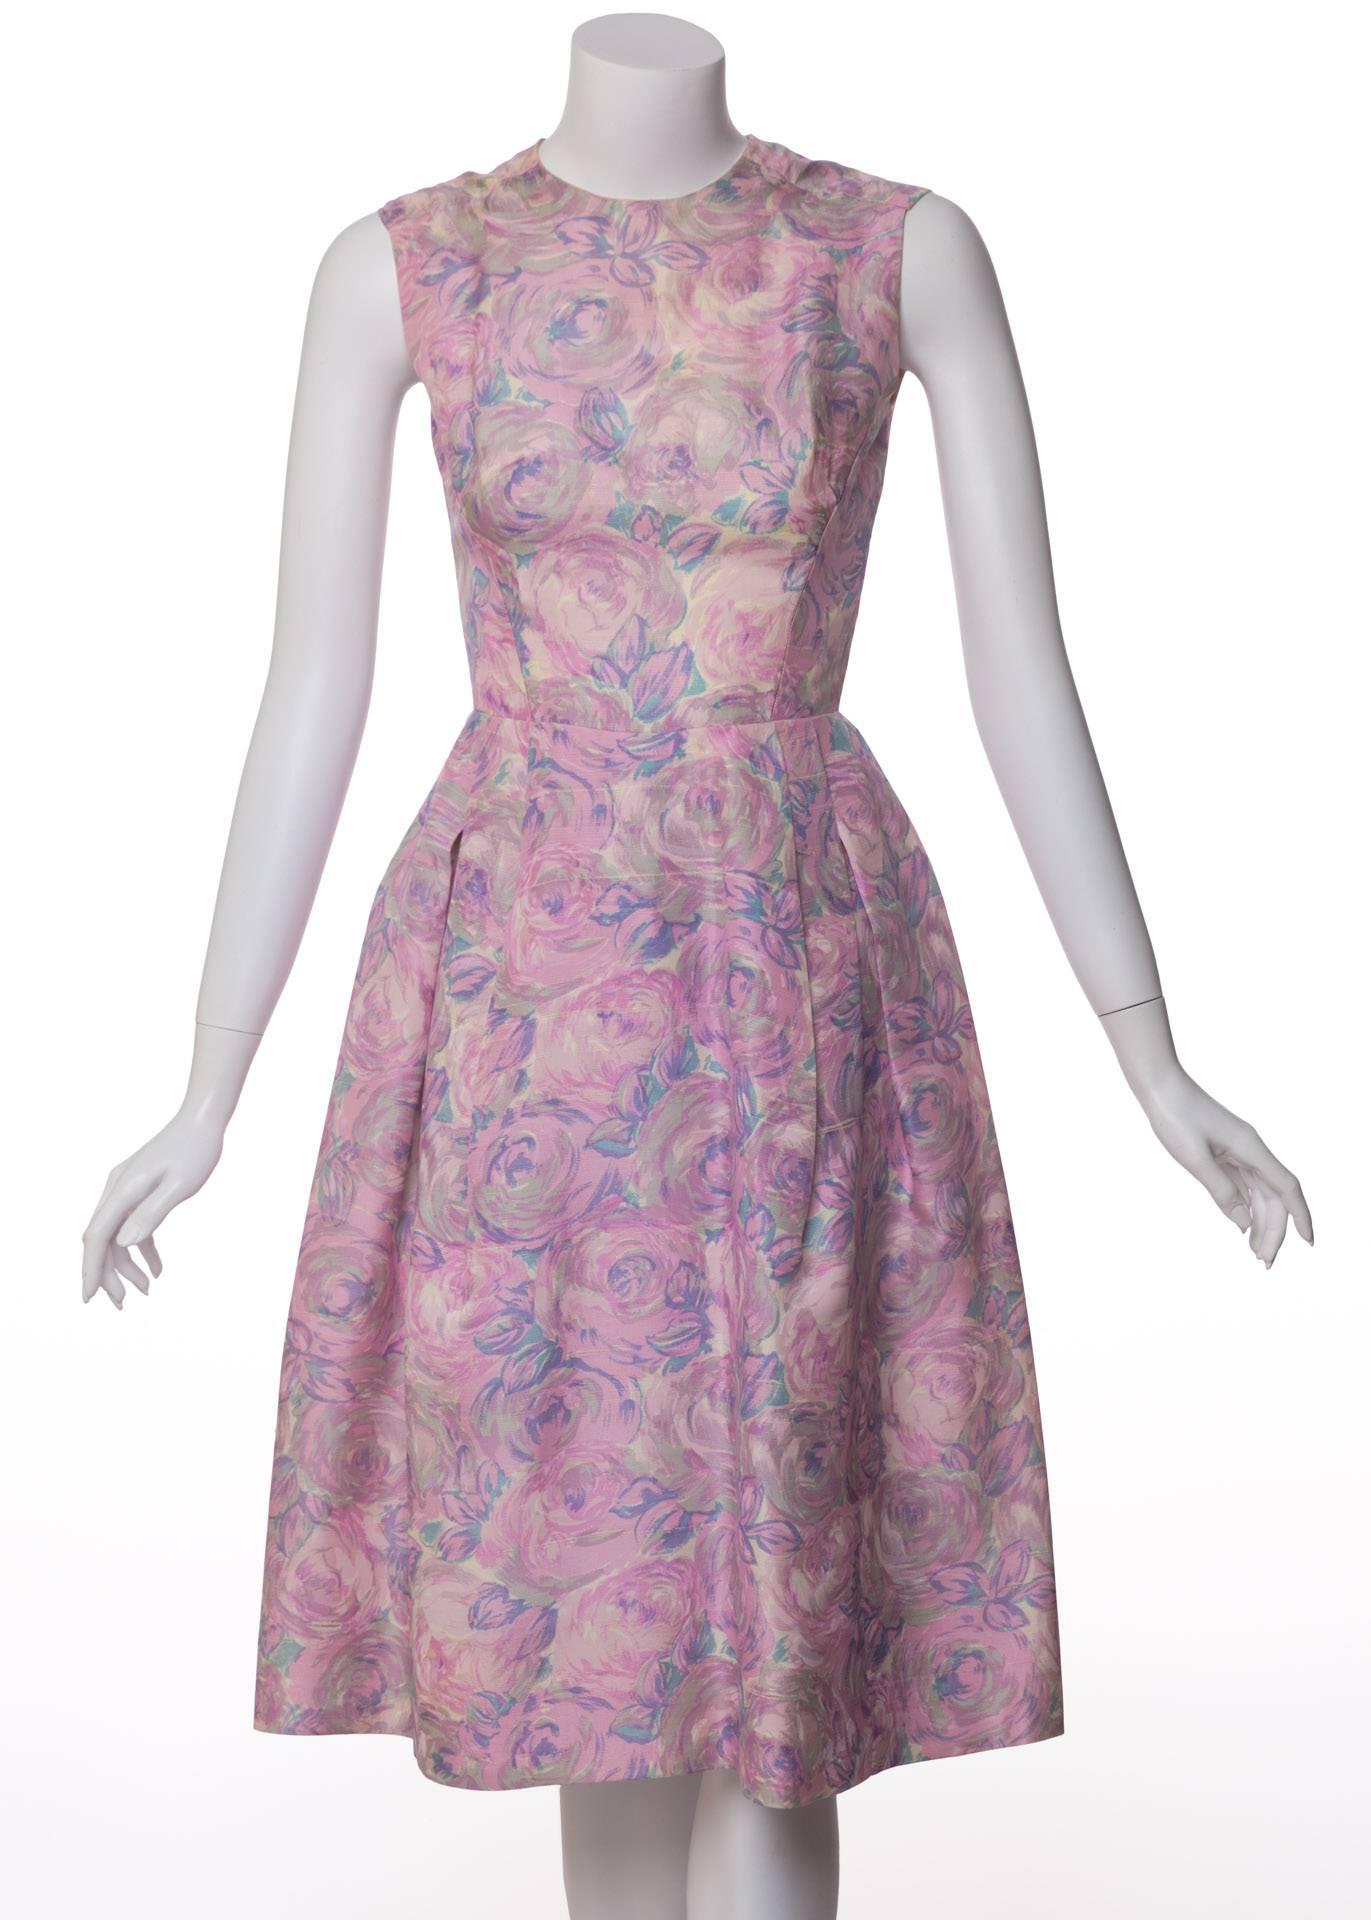 Cette robe en soie de Hattie Carnegie date du début des années 1950. Sa silhouette à taille ajustée est la toile parfaite pour l'imprimé aquarelle magnifique qui s'y déploie : une couverture de jolies pivoines dans des tons de rose, gris, blanc,